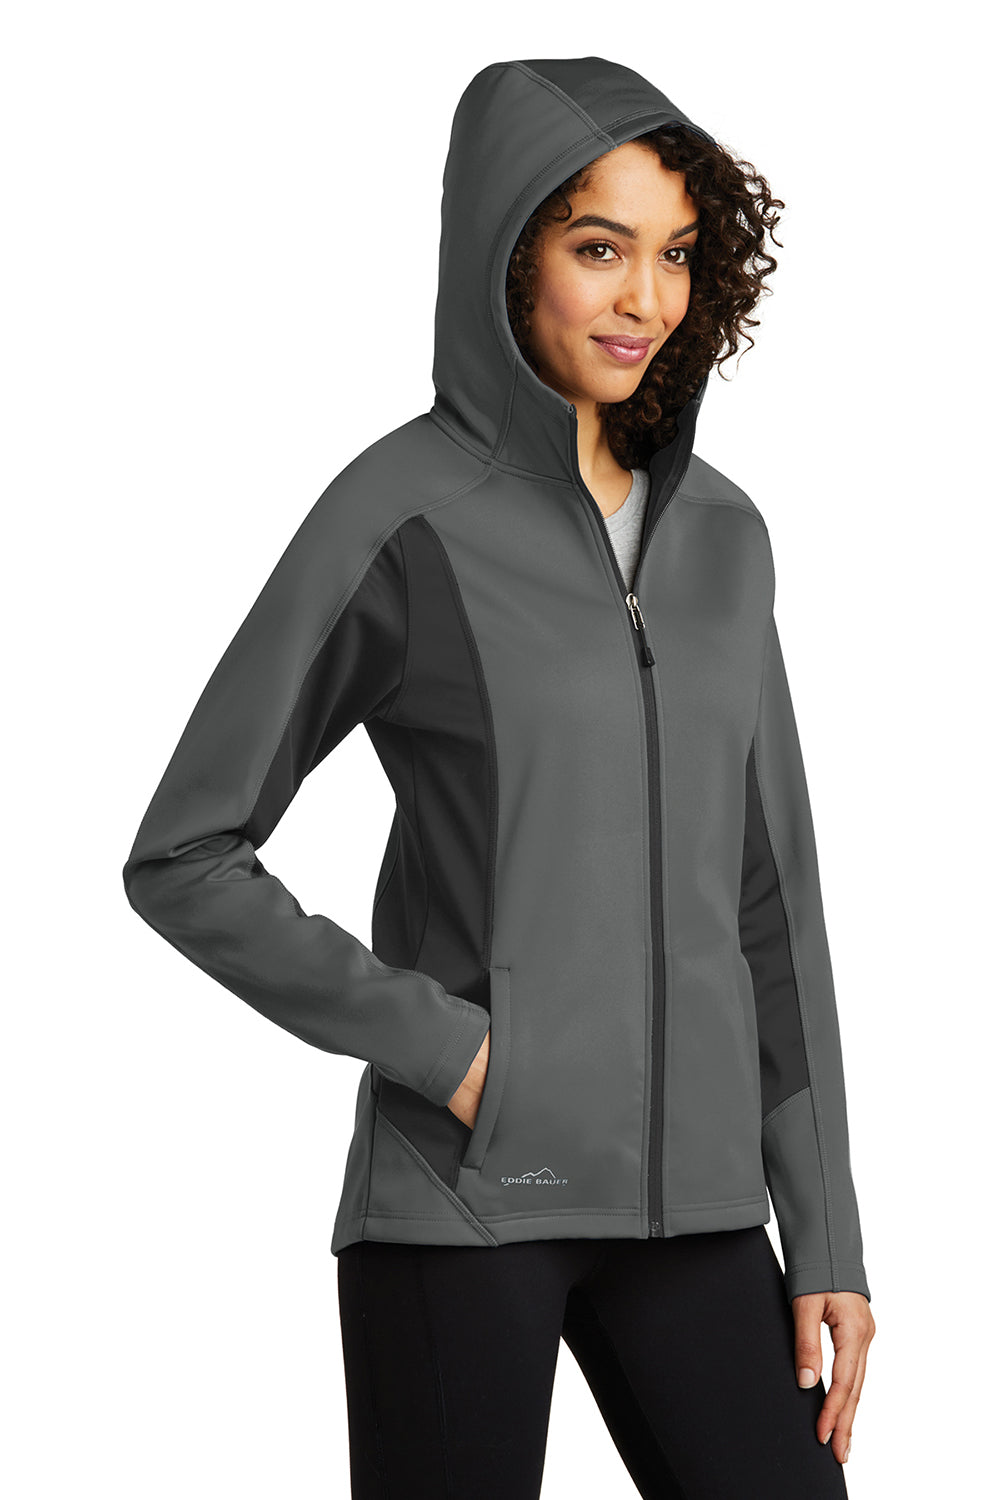 Eddie Bauer EB543 Womens Trail Water Resistant Full Zip Hooded Jacket Metal Grey Model 3Q